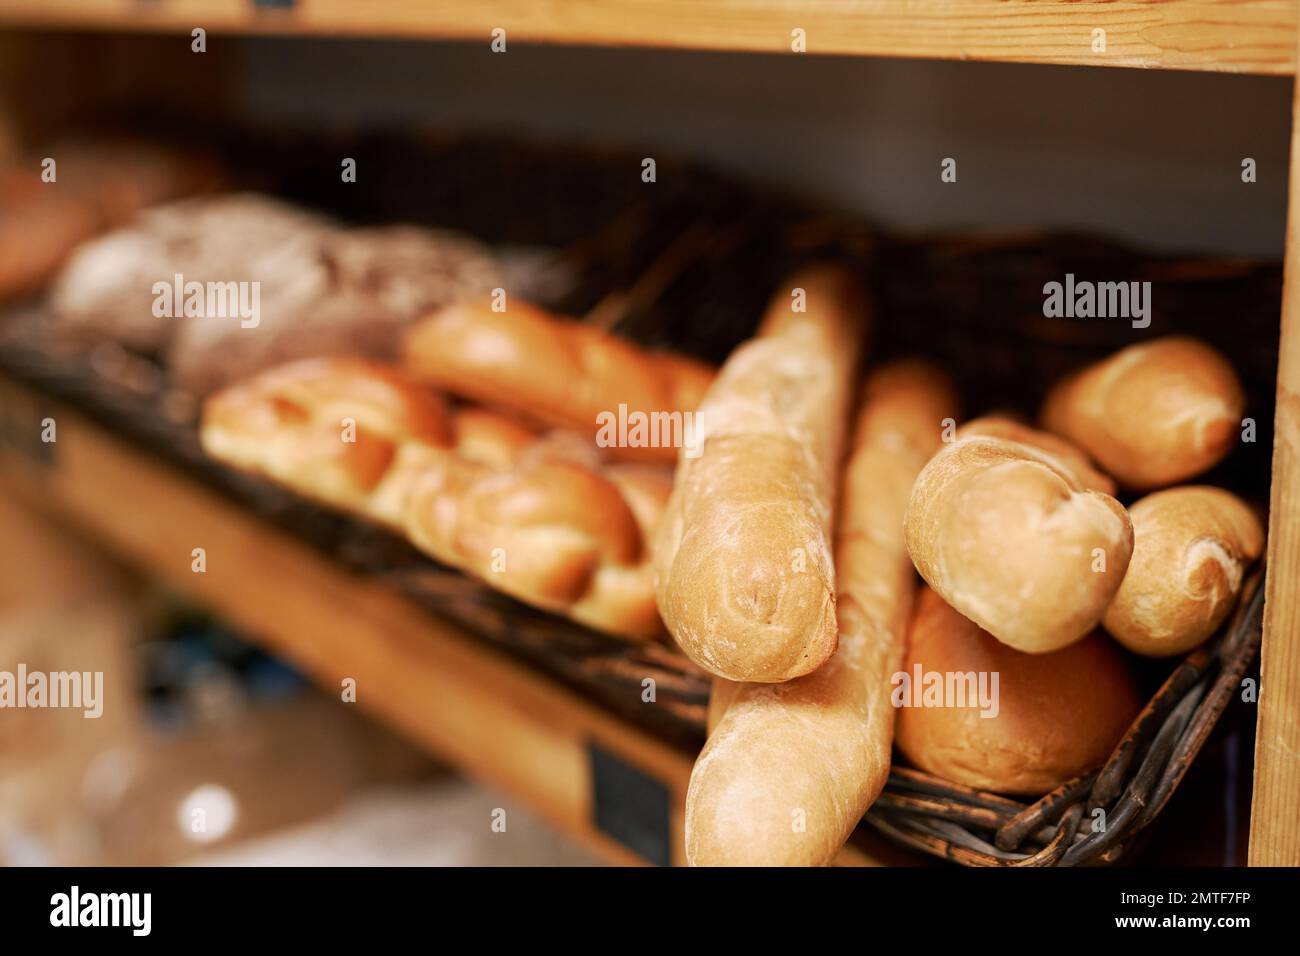 Freshly baked baguettes on shelves in bakery Stock Photo